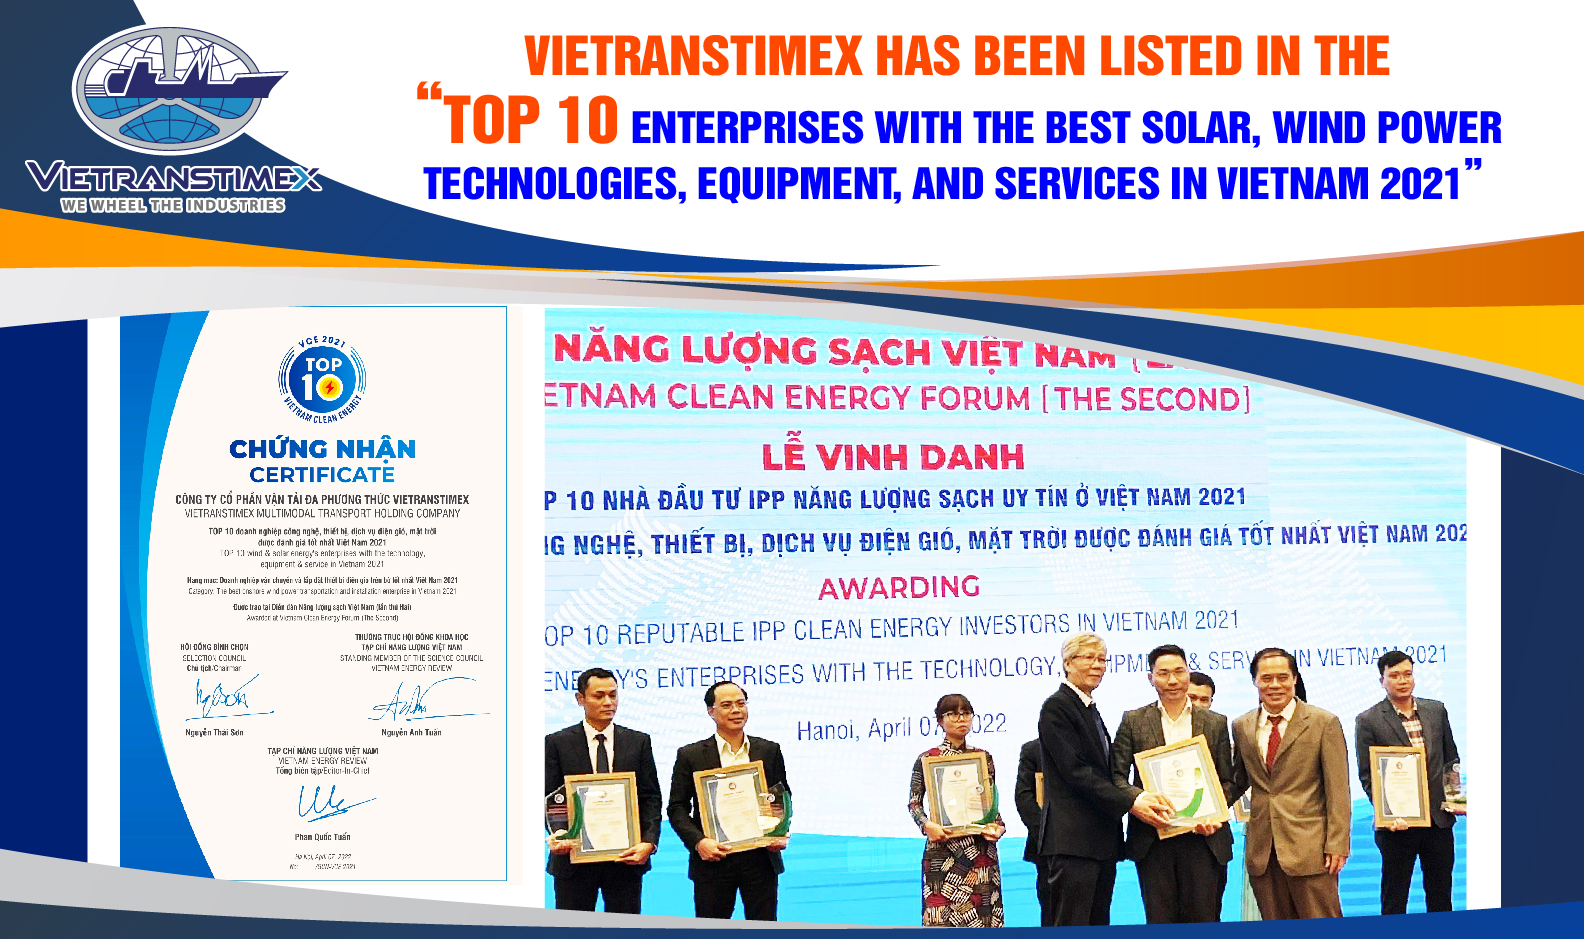 Vietranstimex Được Vinh Danh “TOP 10 Doanh Nghiệp Công Nghệ, Thiết Bị, Dịch Vụ Điện Gió, Mặt Trời Được Đánh Giá Tốt Nhất Việt Nam 2021”